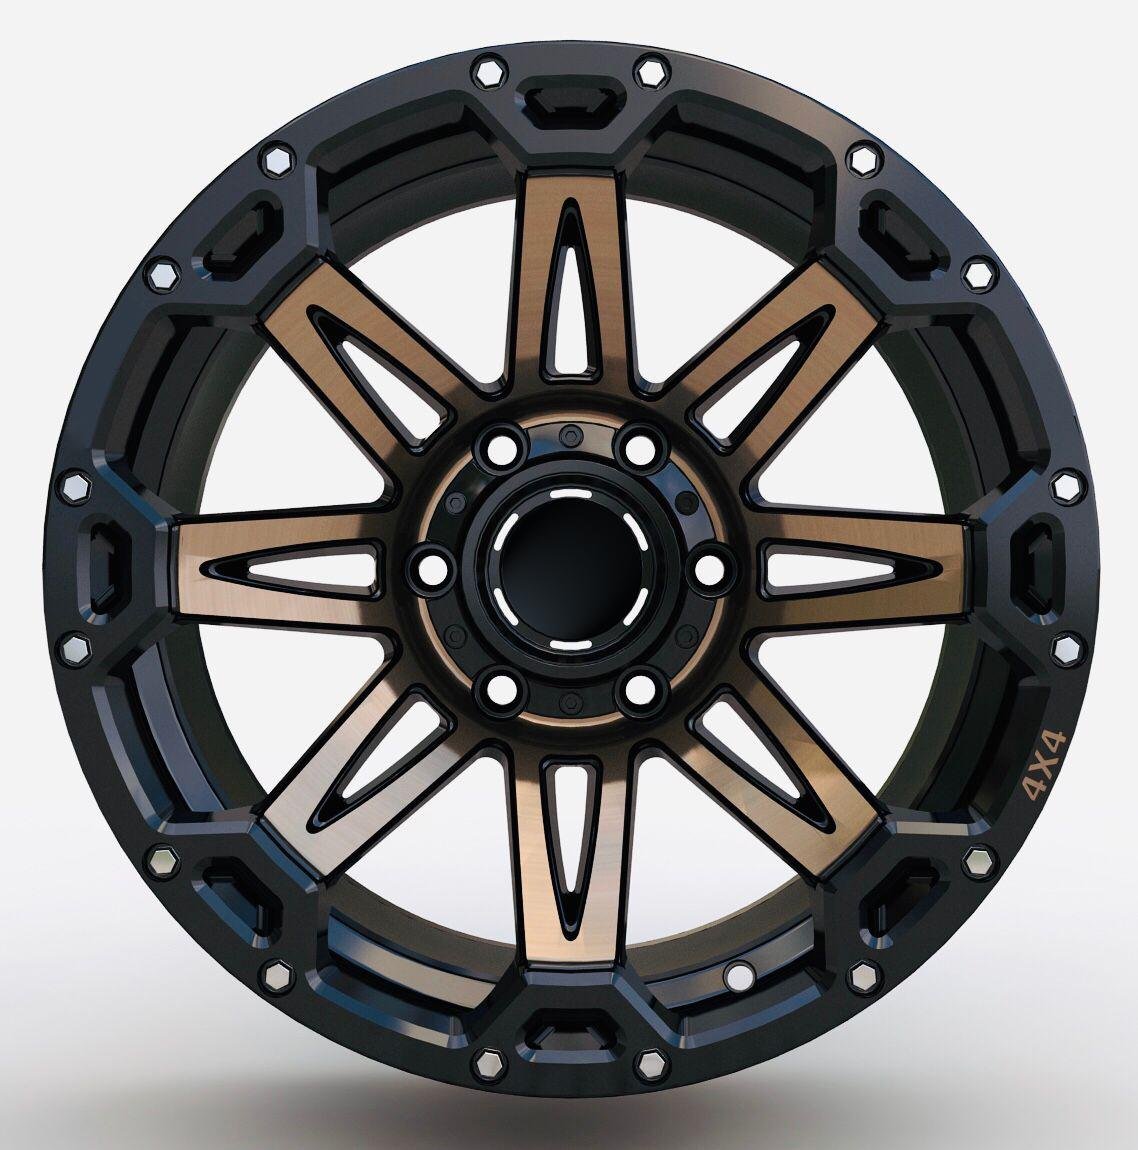 Alloy Wheels-6x139.7 3